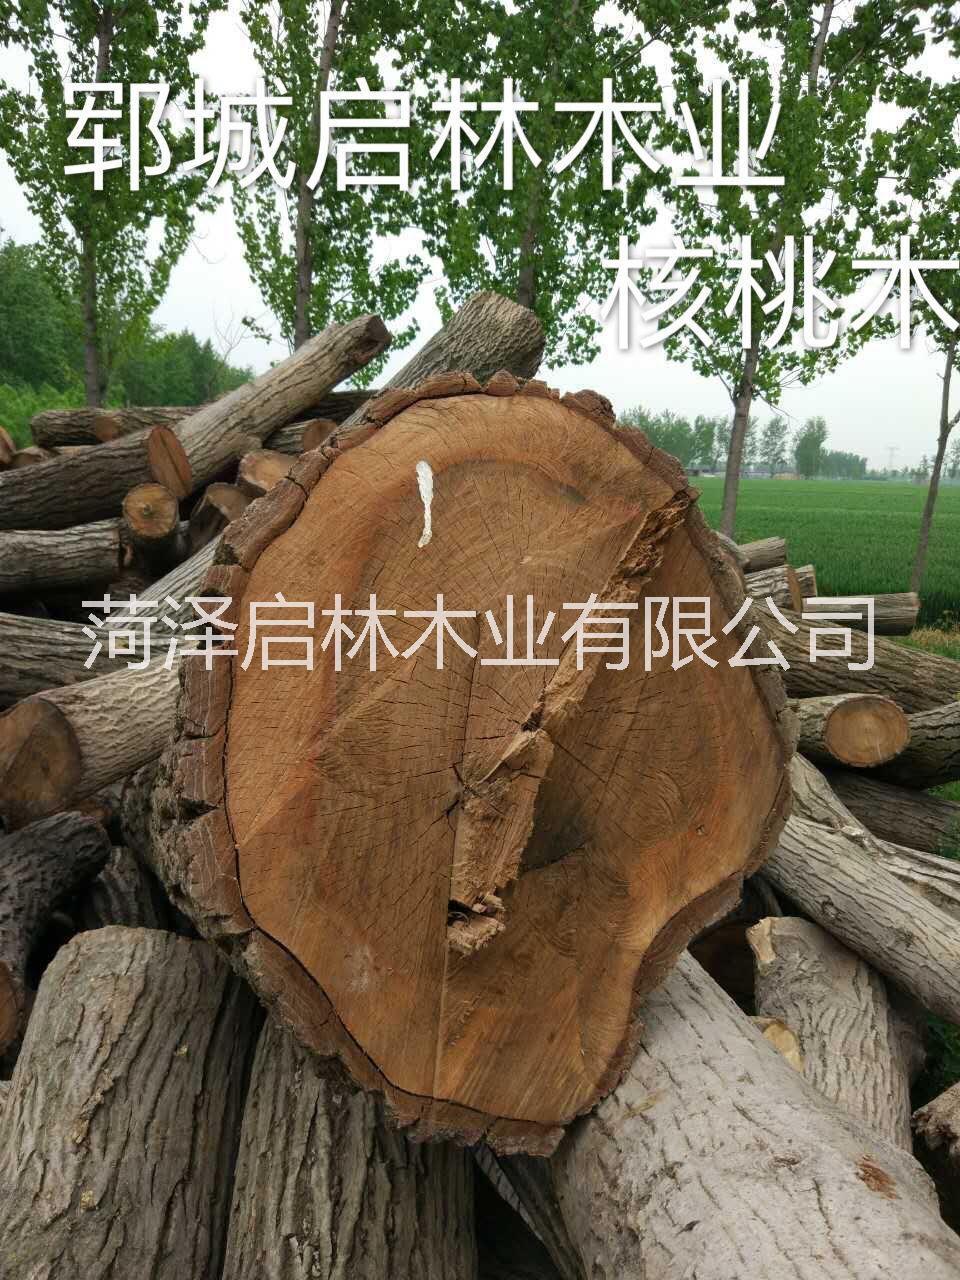 核桃木大量供应用于工艺品/雕刻/制作家具等的核桃木/优质大径核桃原木批发